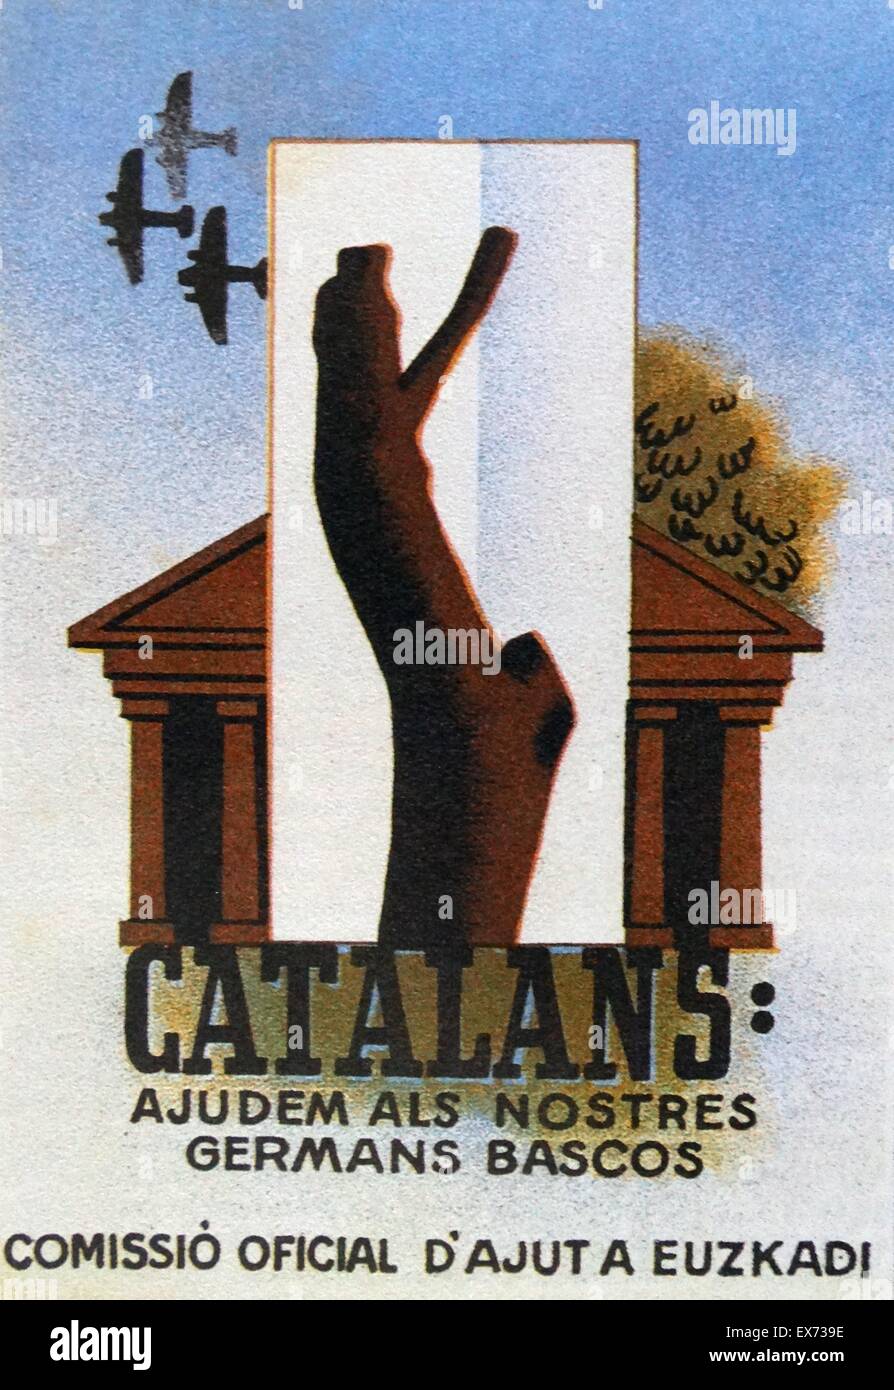 Guerre civile espagnole affiche de propagande Basque 1937. 'Catalans ; ajudem als nostres allemands bascos' (Catalans ; il faut aider nos frères Basque) Banque D'Images